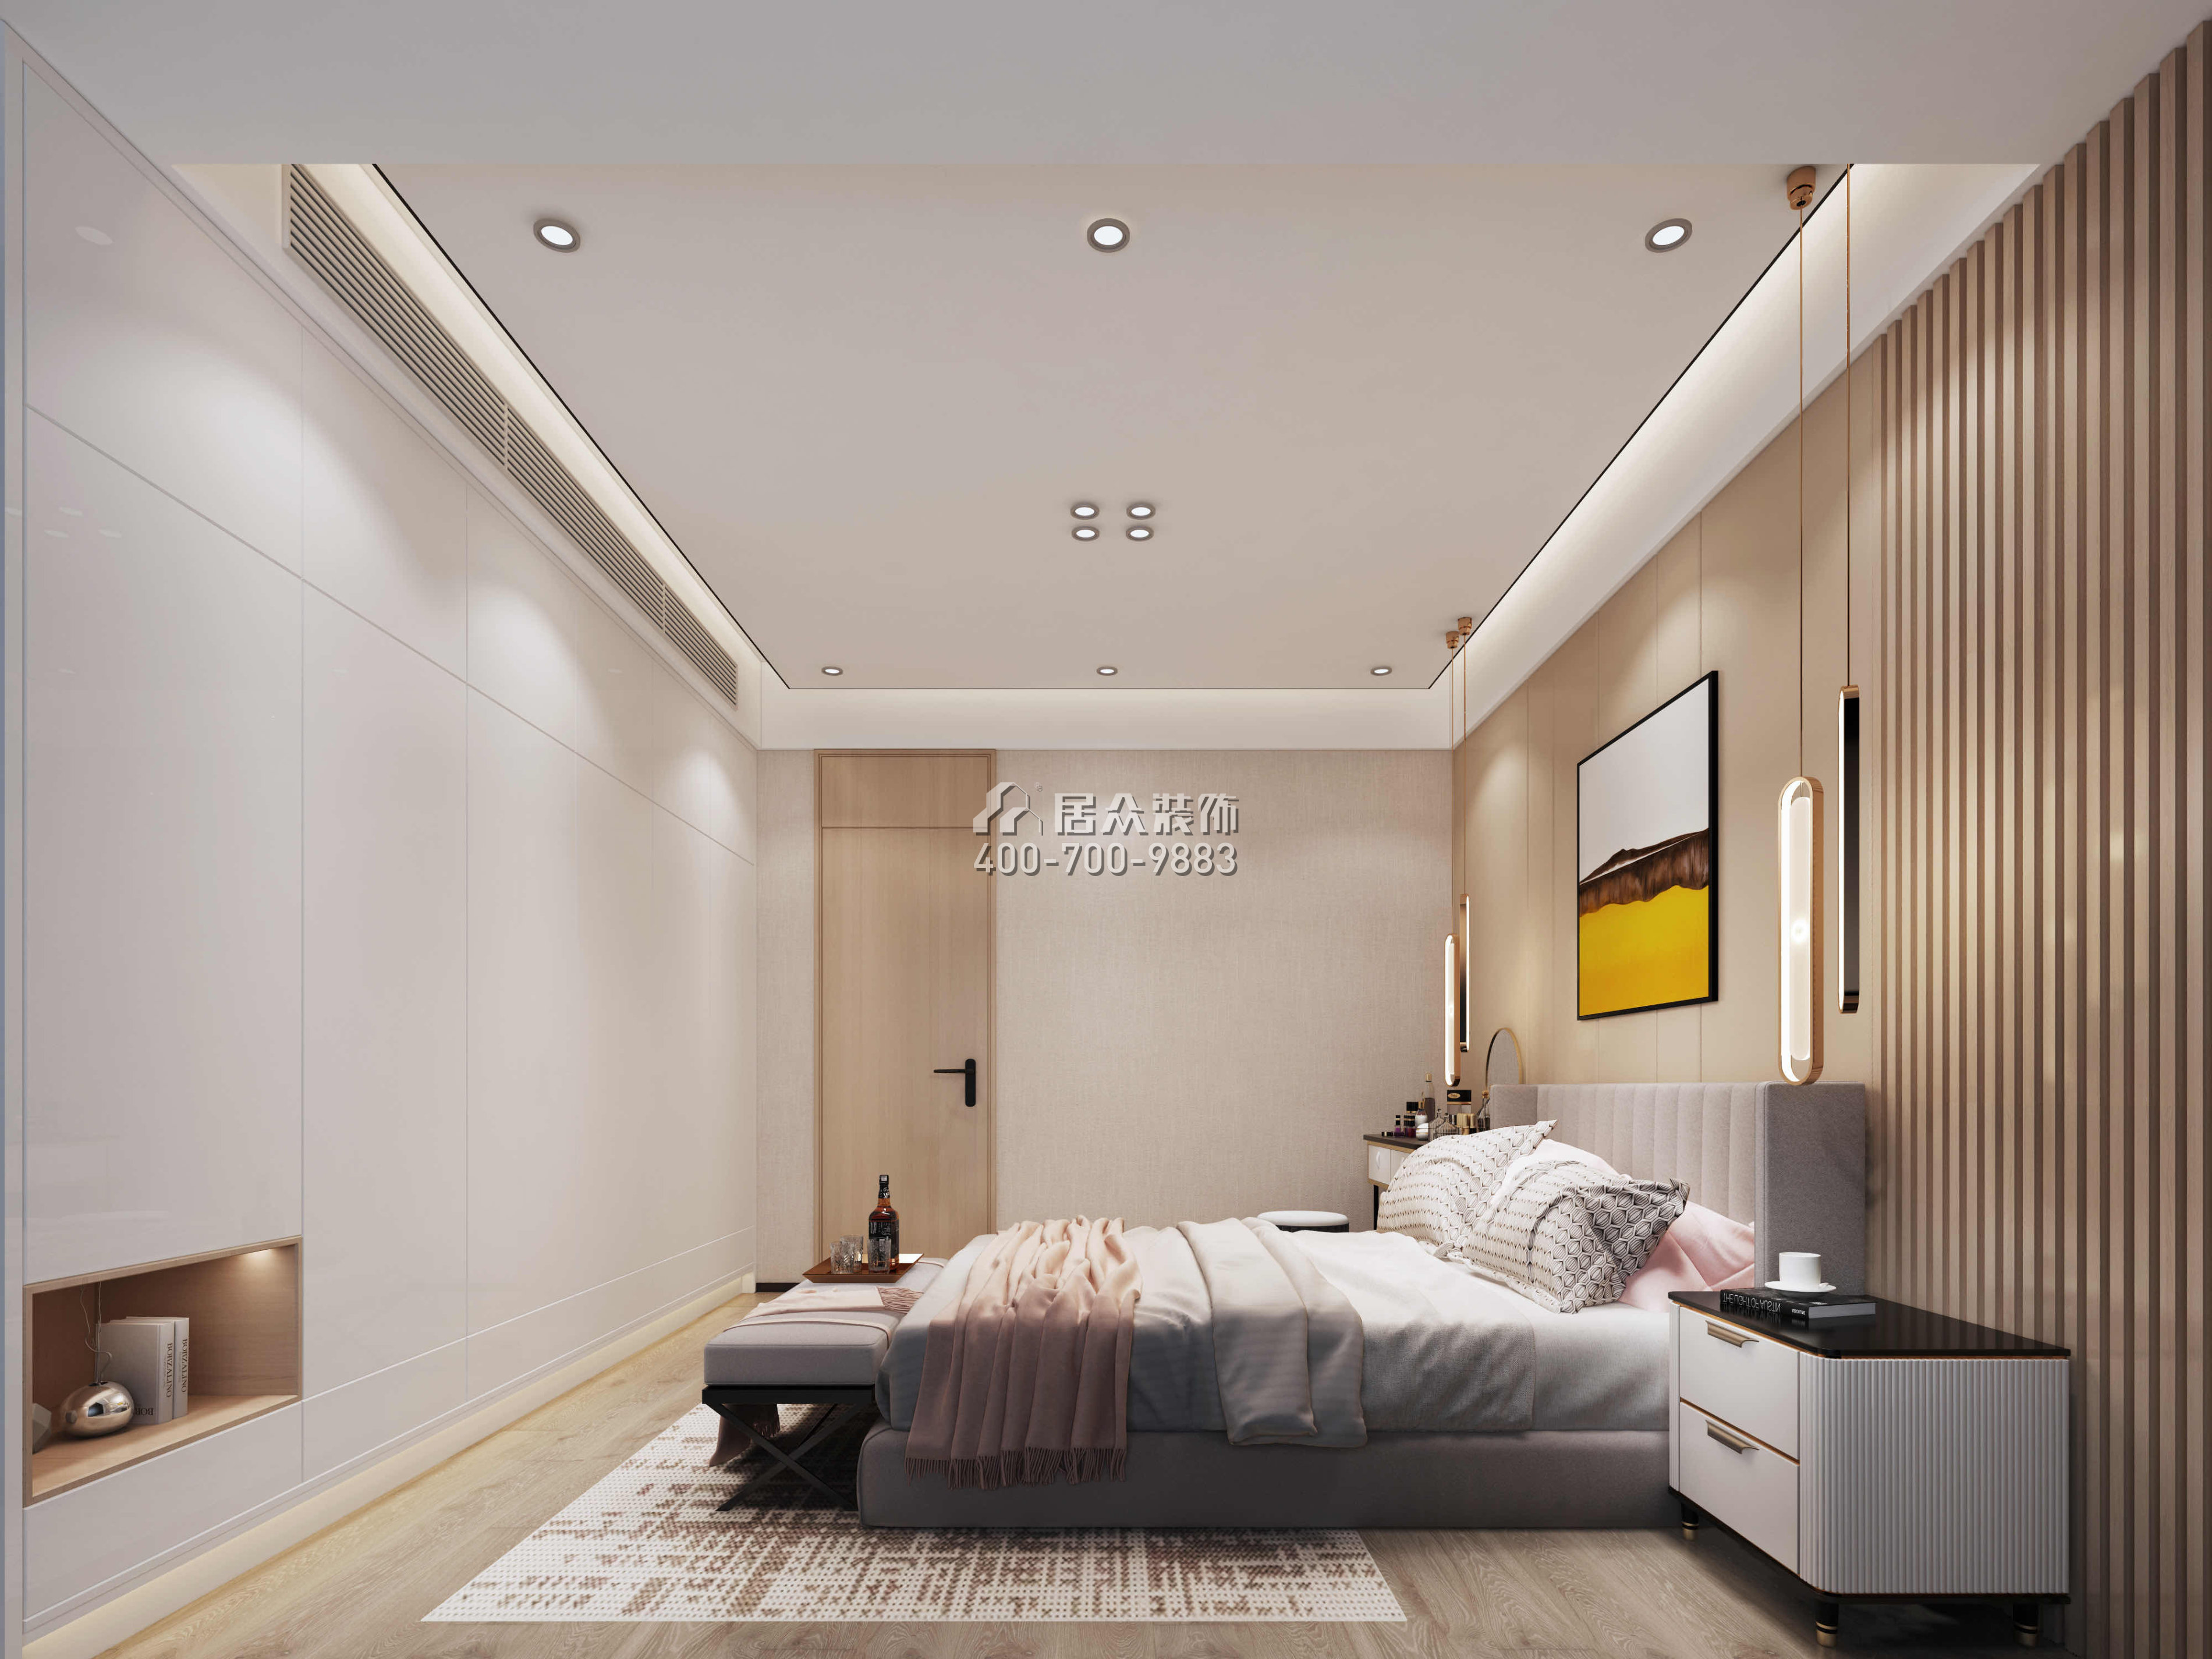 中洲華府158平方米中式風格平層戶型臥室裝修效果圖